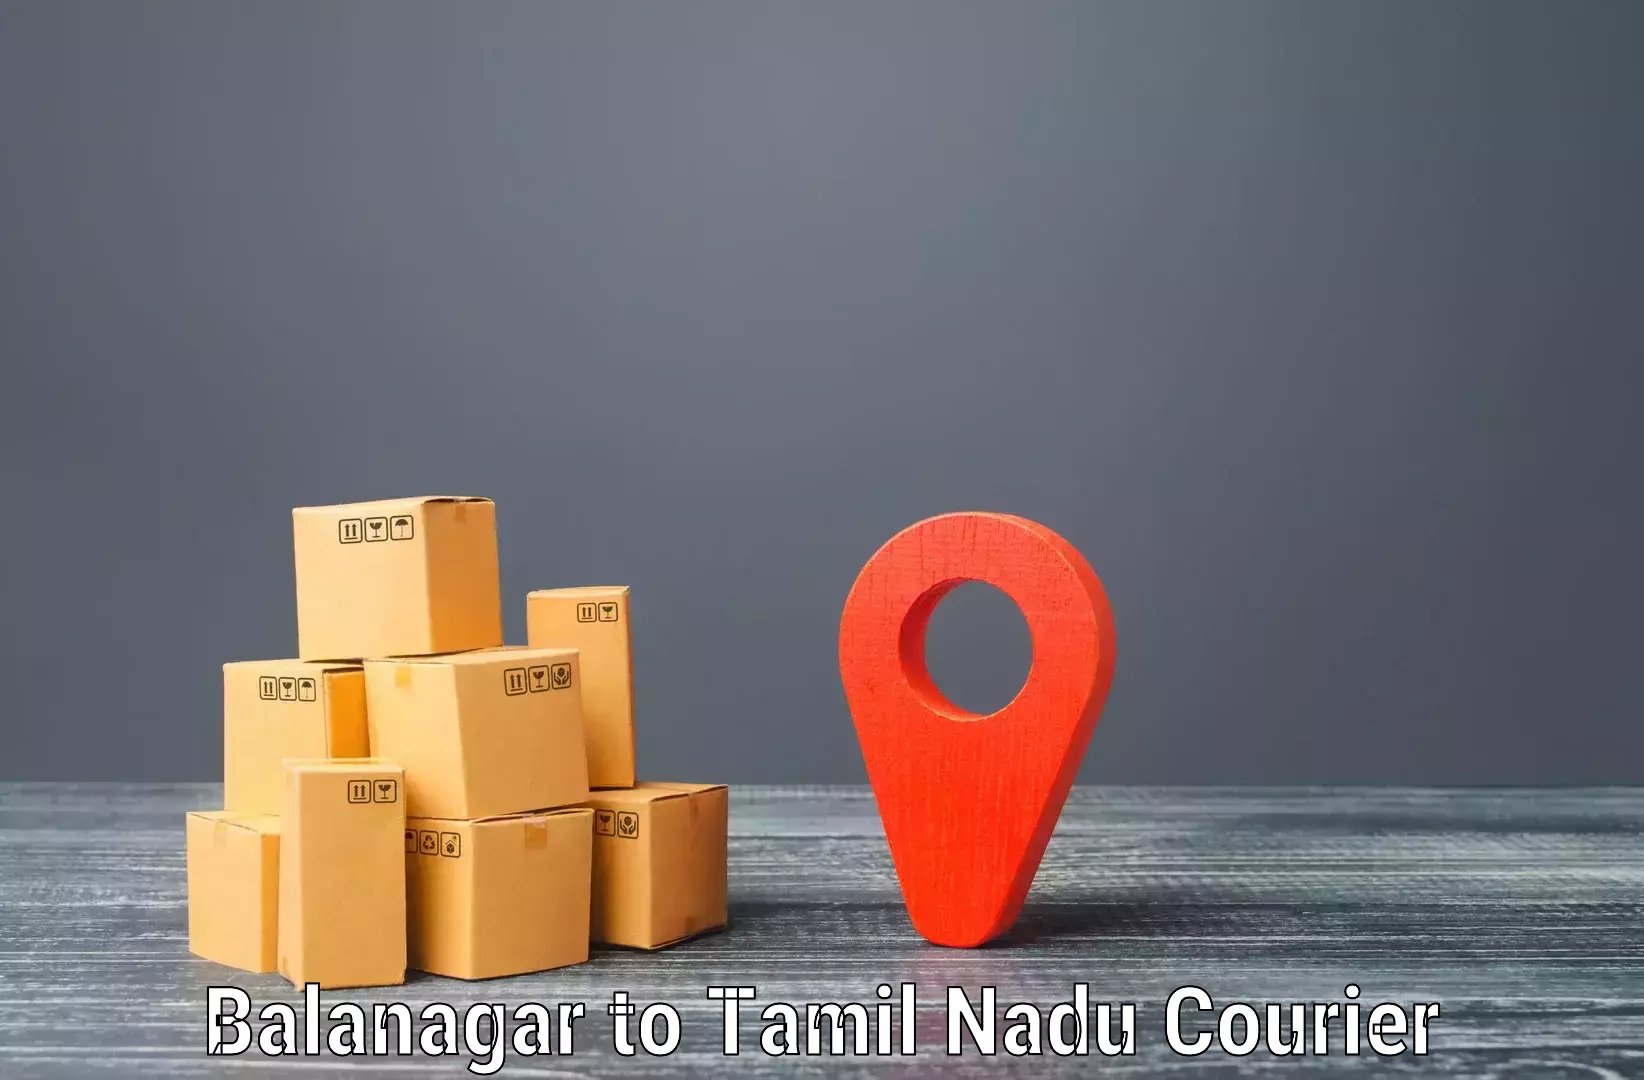 Urgent courier needs Balanagar to Cumbum